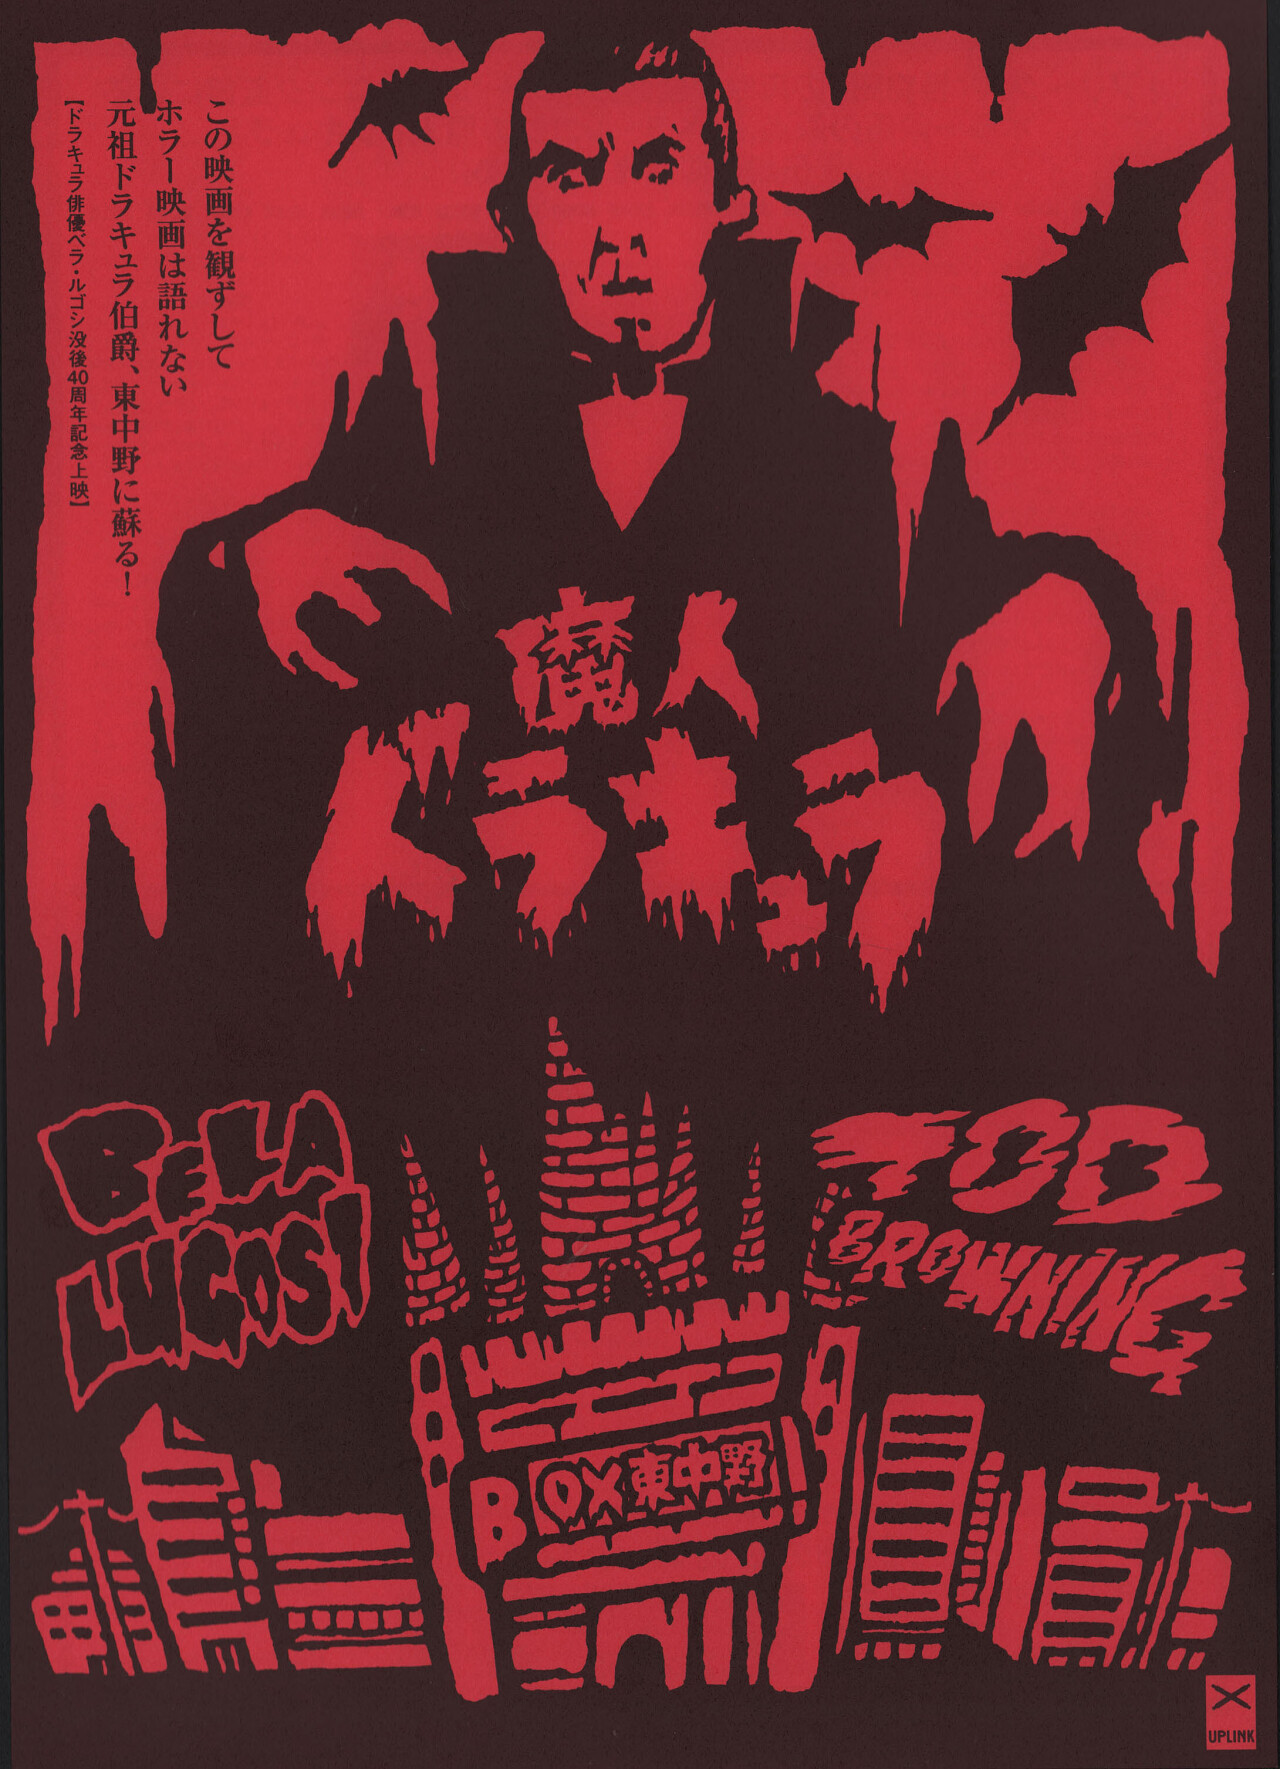 Дракула (Dracula, 1931), режиссёр Тод Браунинг, японский постер к фильму (ужасы, 2000 год)